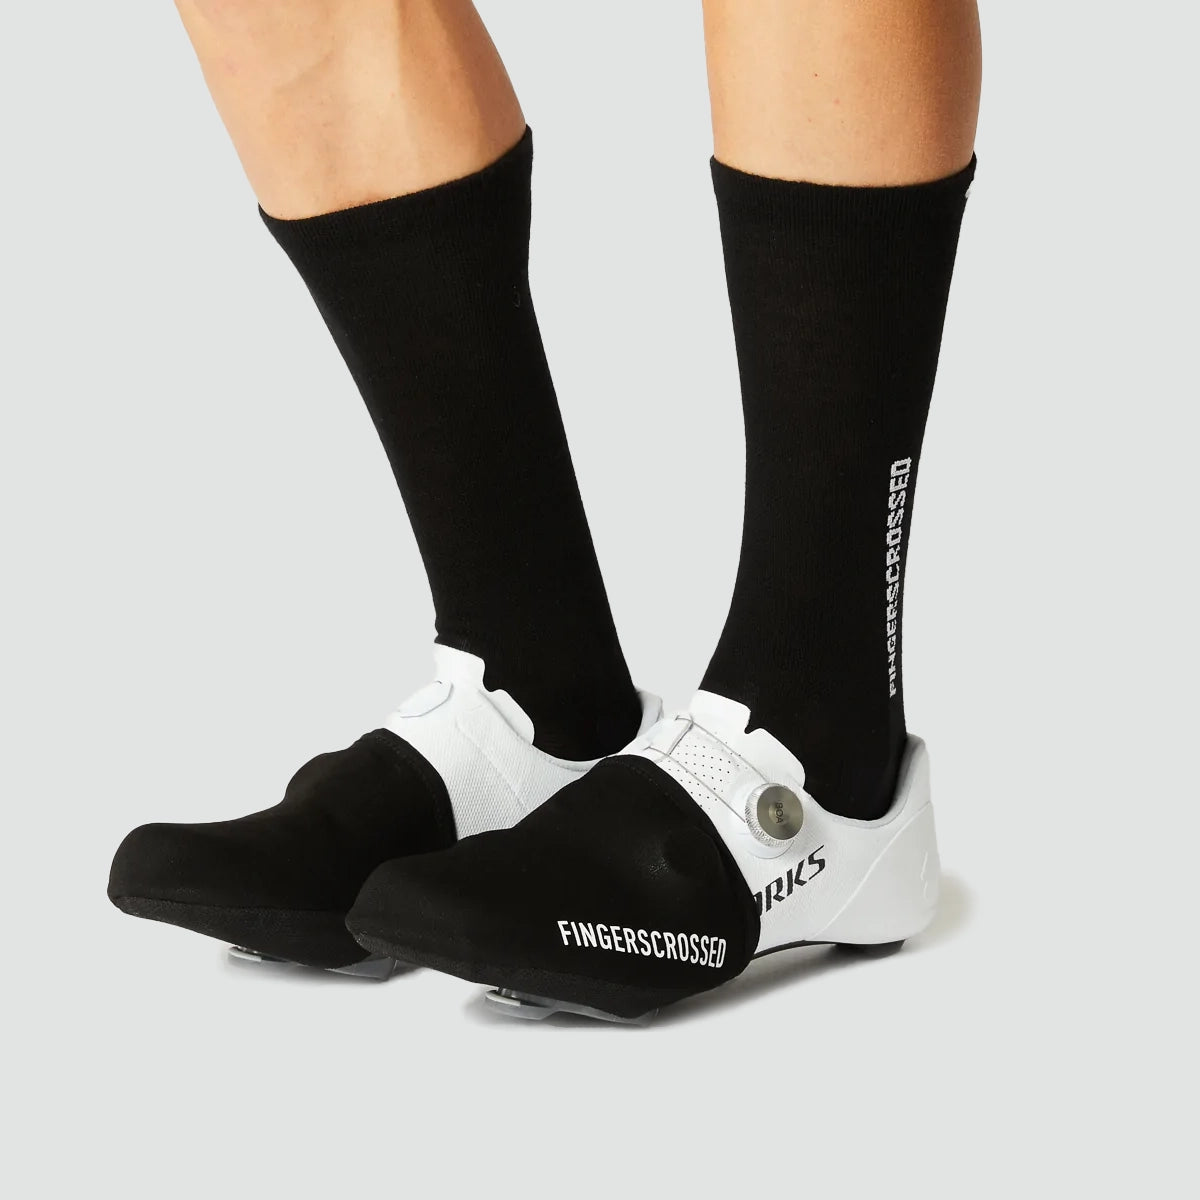 Club Waterproof Cycling Shoe Covers